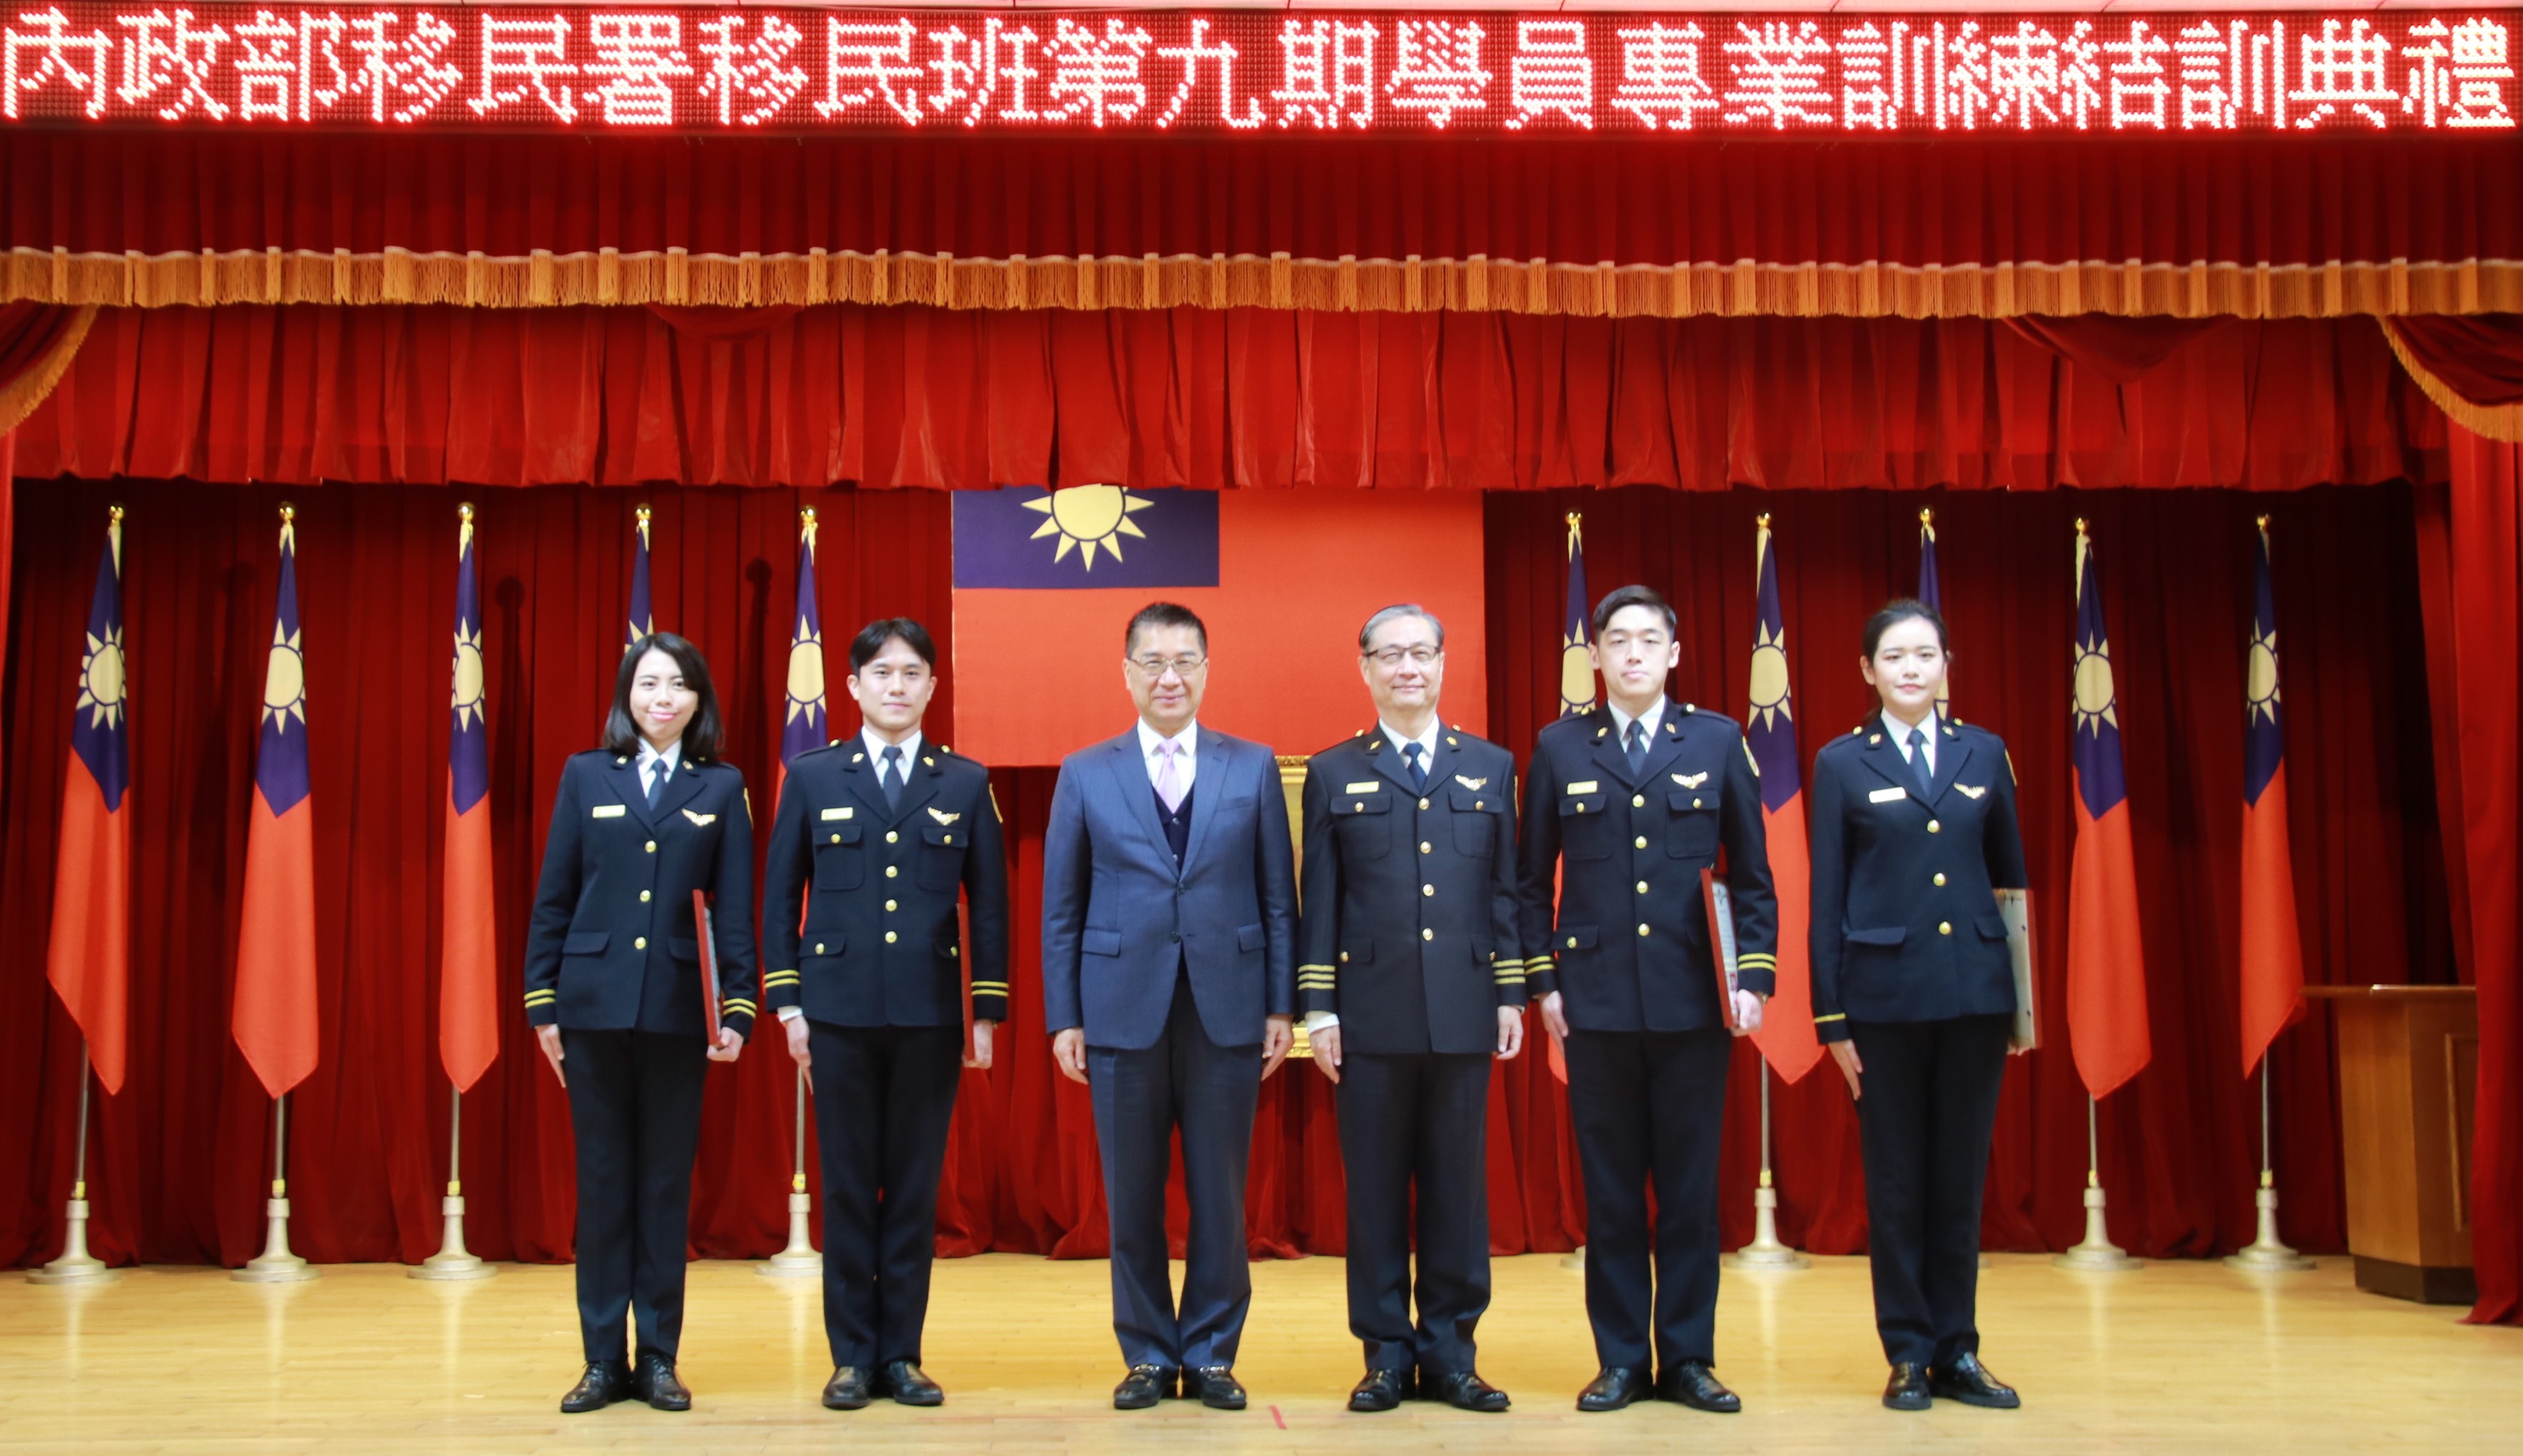 Menteri Dalam Negeri Xu Guoyong (徐國勇) ketiga dari kiri dan Direktur Departemen Imigrasi Zhong Jingkun (鐘景琨) keempat dari kiri berfoto bersama dengan pejabat imigrasi terkemuka. (Sumber: Departemen Imigrasi)